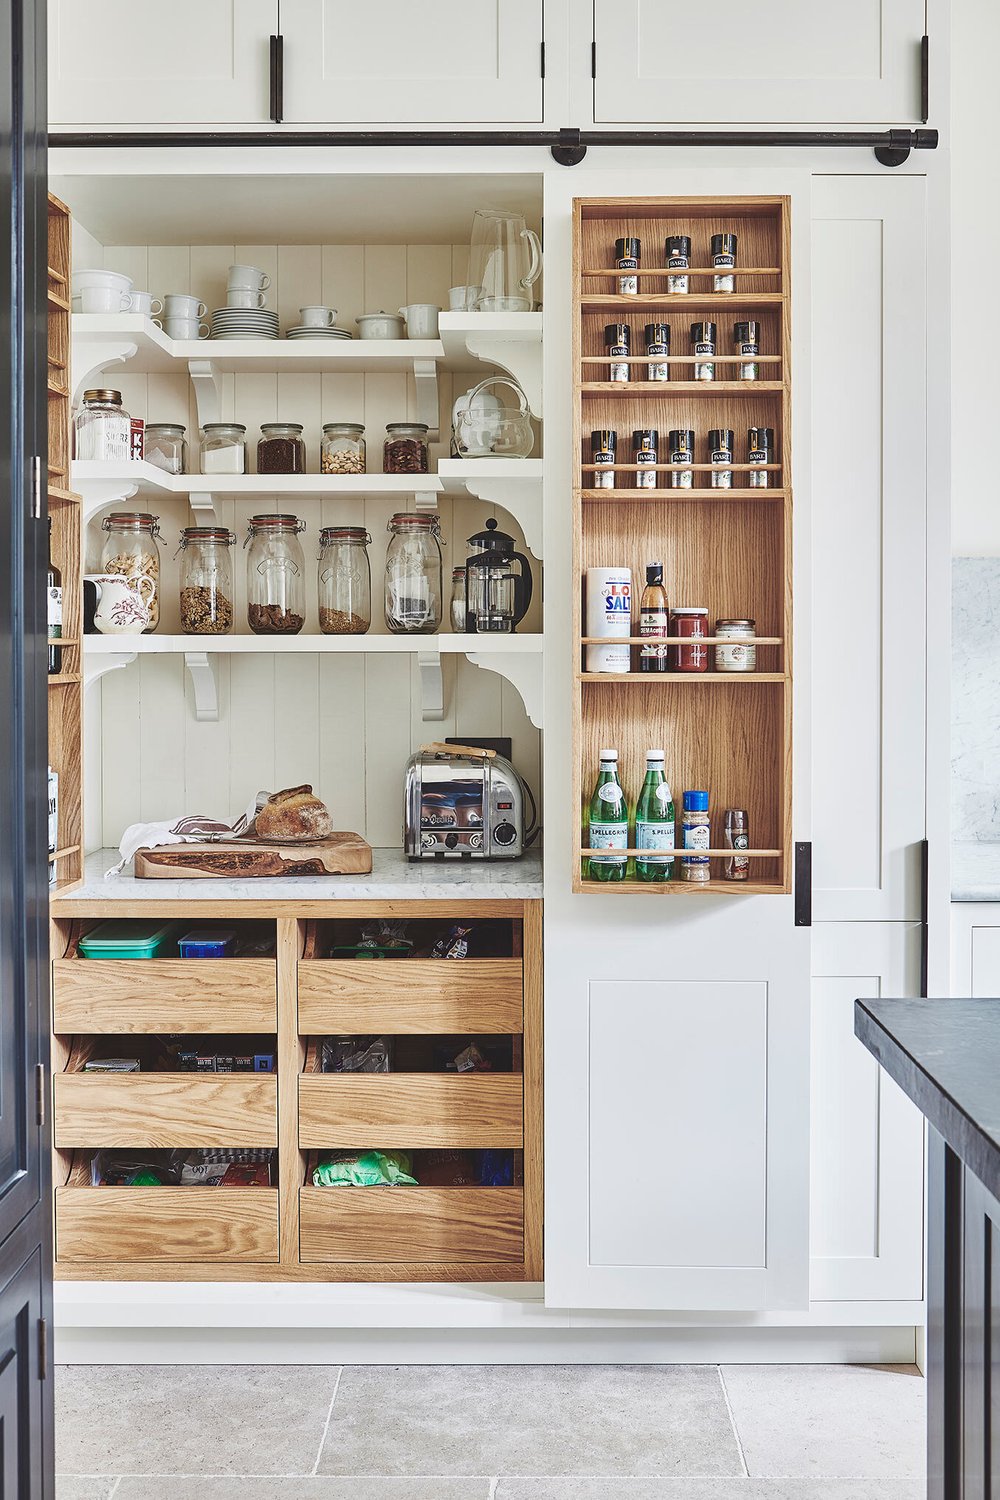 Deze keuken is een ontwerp van Blakes London, met een super mooie op maat gemaakte voorraadkast met van alles erop en eraan. Op de wandplanken vind je zowel kleine glazen voorraadpotten als grote Weckpotten. | Bron: Blakeslondon.com